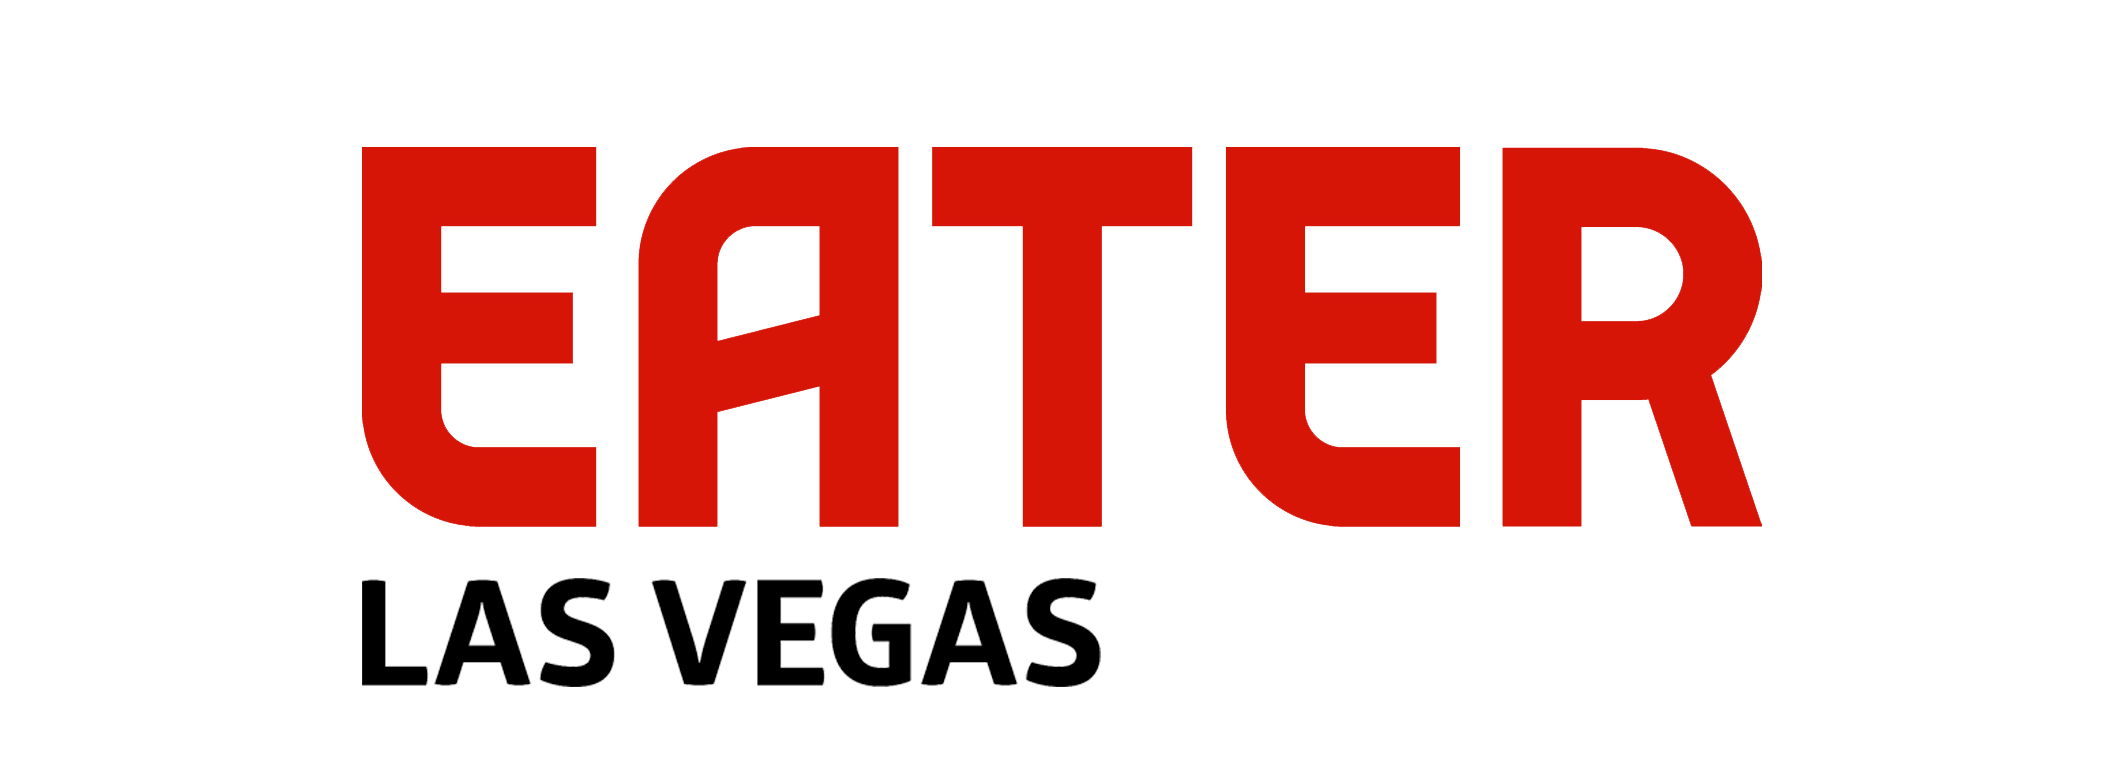 Eater Las Vegas logo